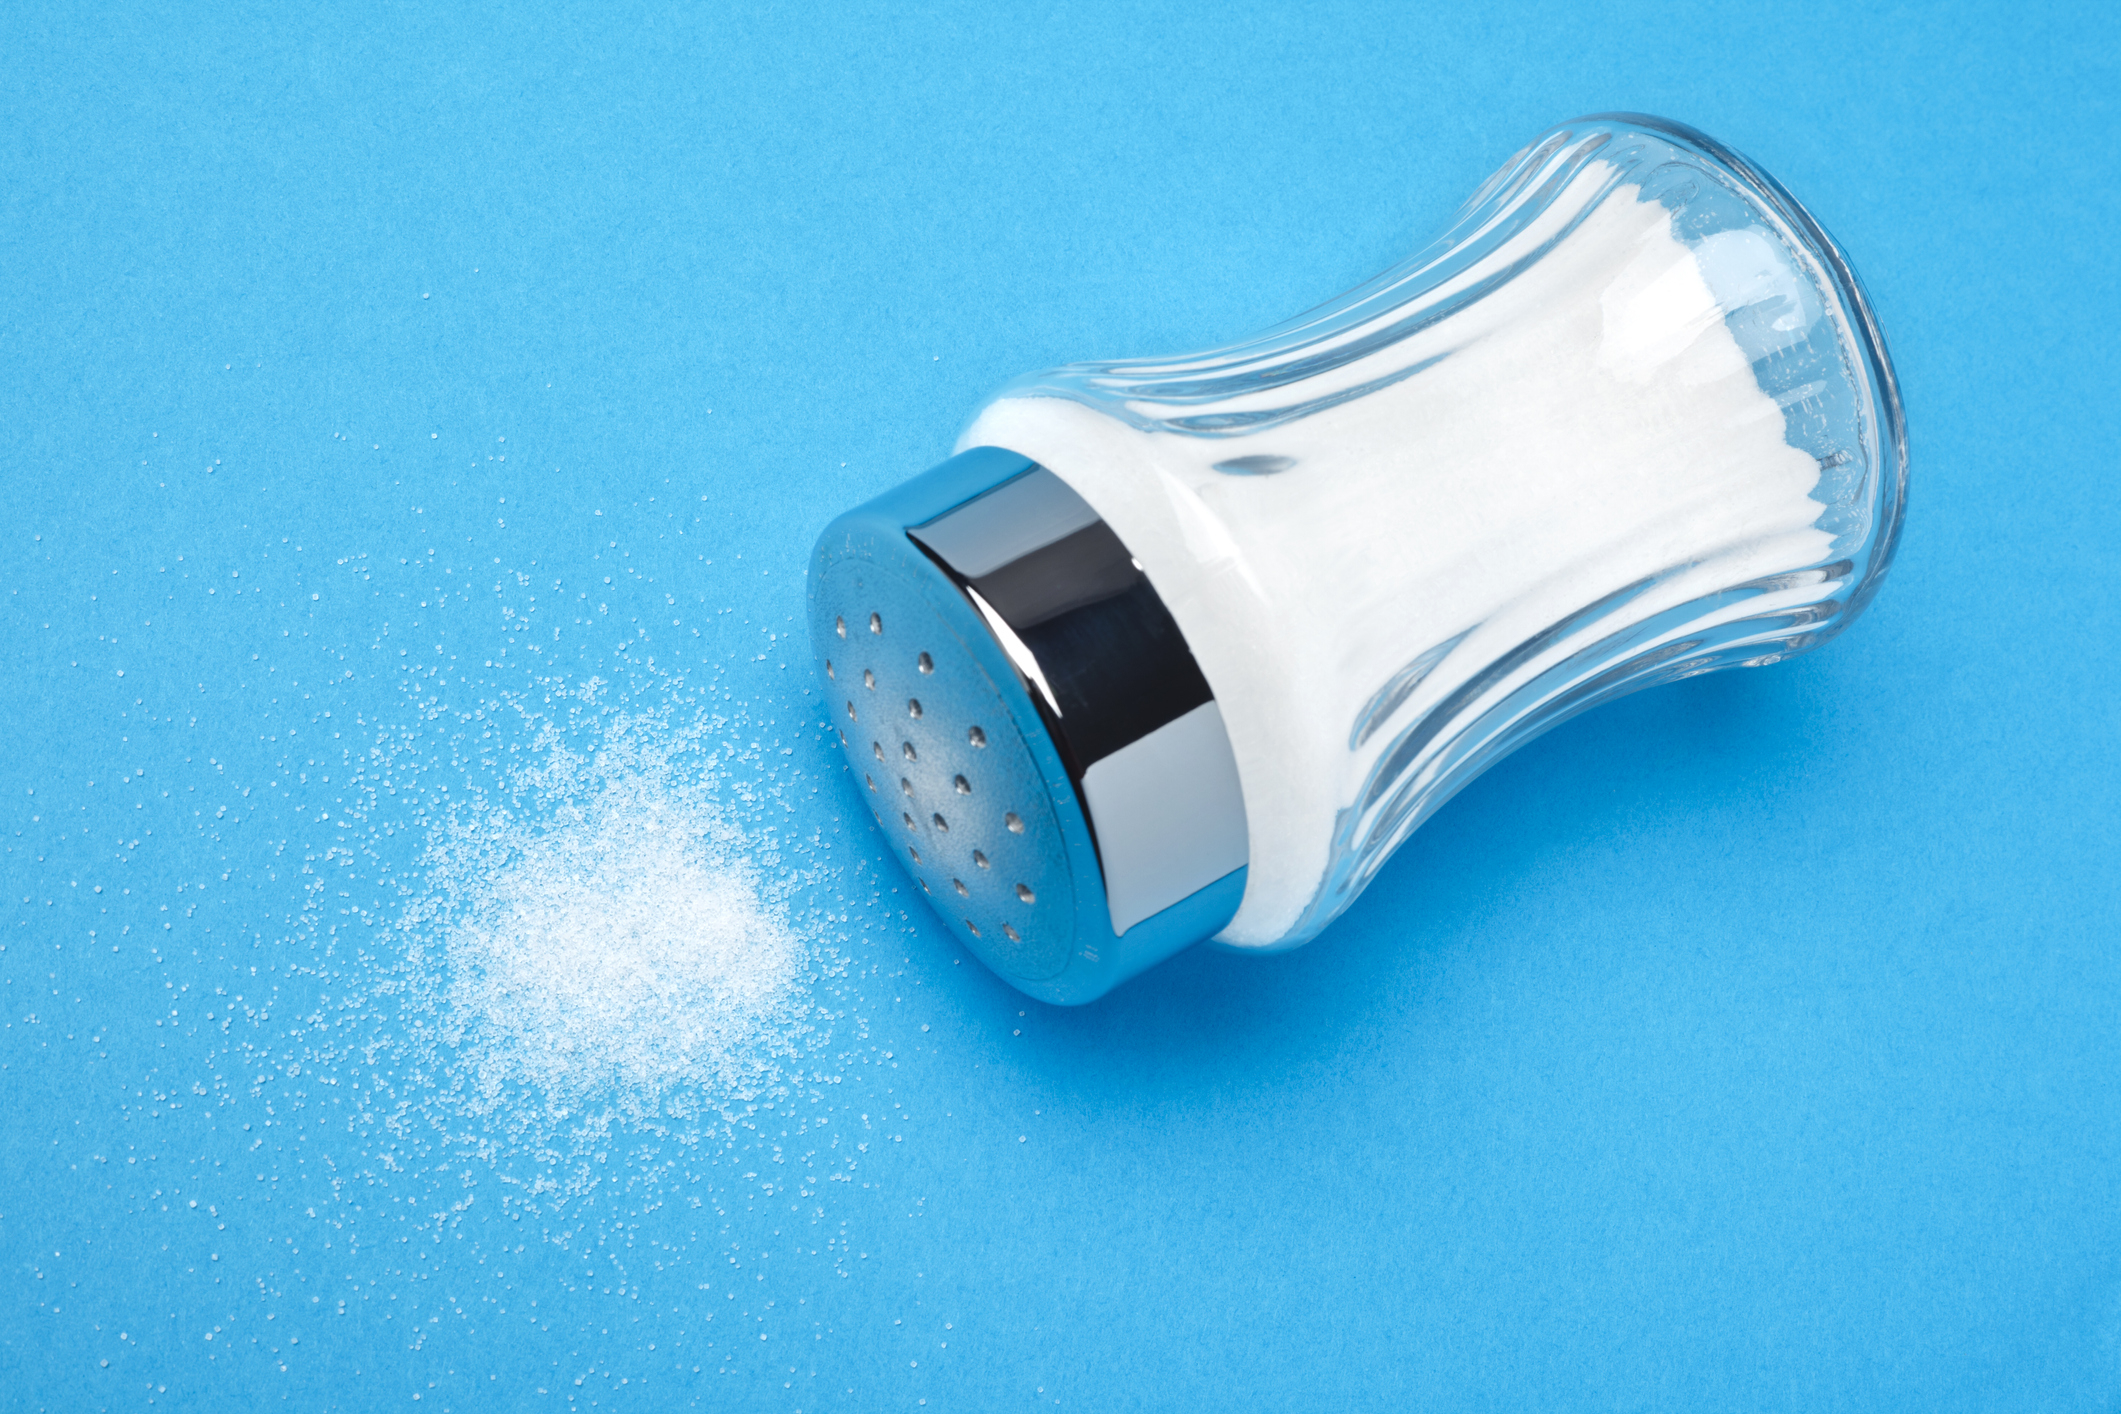 A spilled salt shaker on a blue background